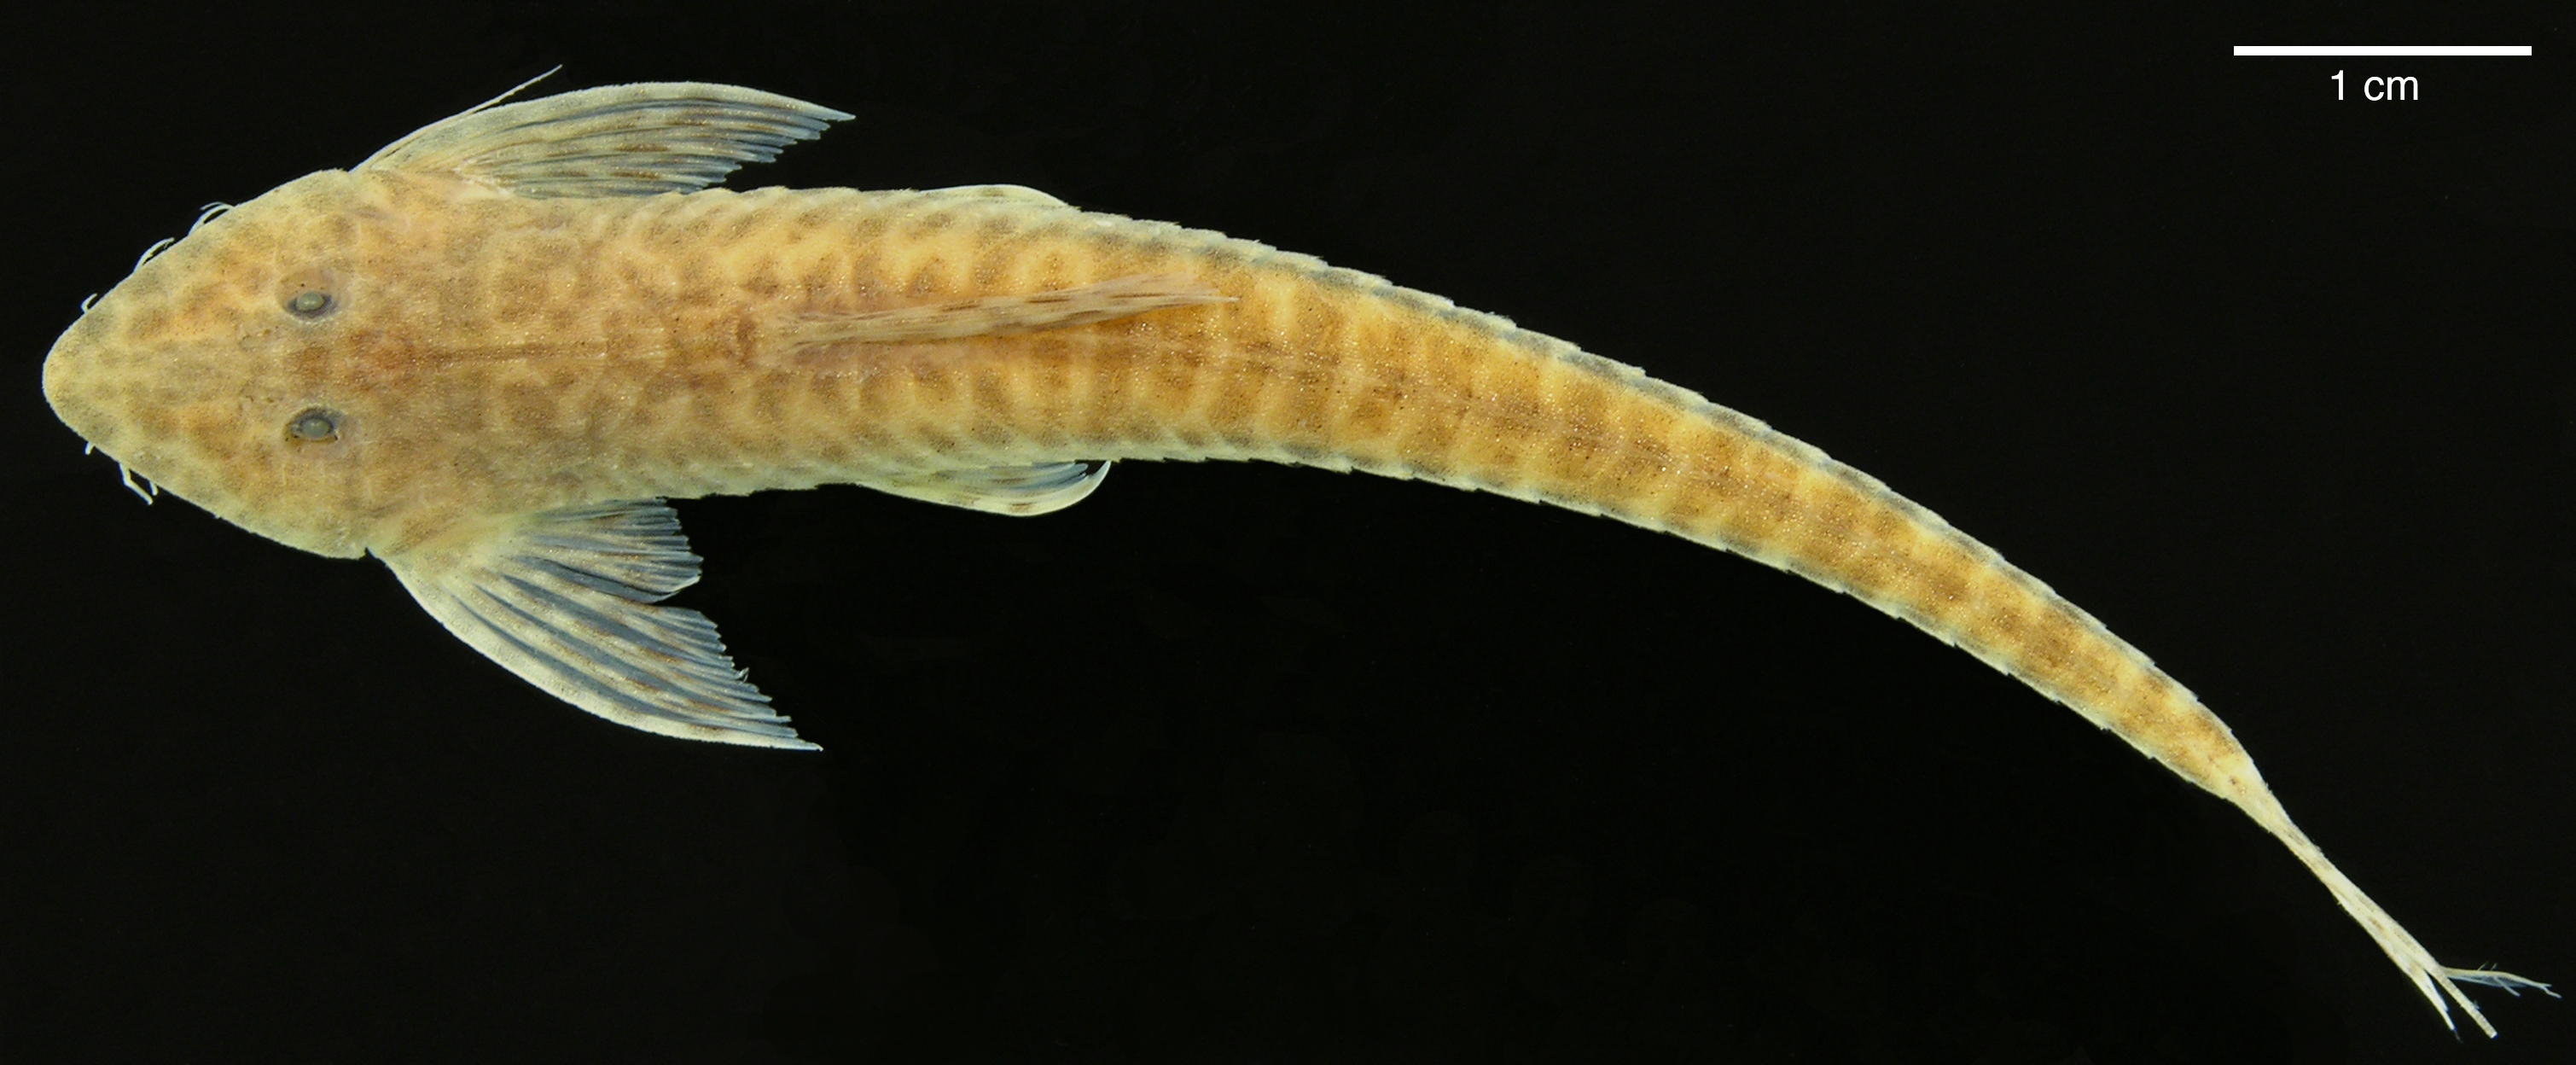 Paratype of <em>Apistoloricaria laani</em>, IAvH-P-10565, 78.5 mm SL (scale bar = 1 cm). Photograph by M. H. Sabaj Pérez